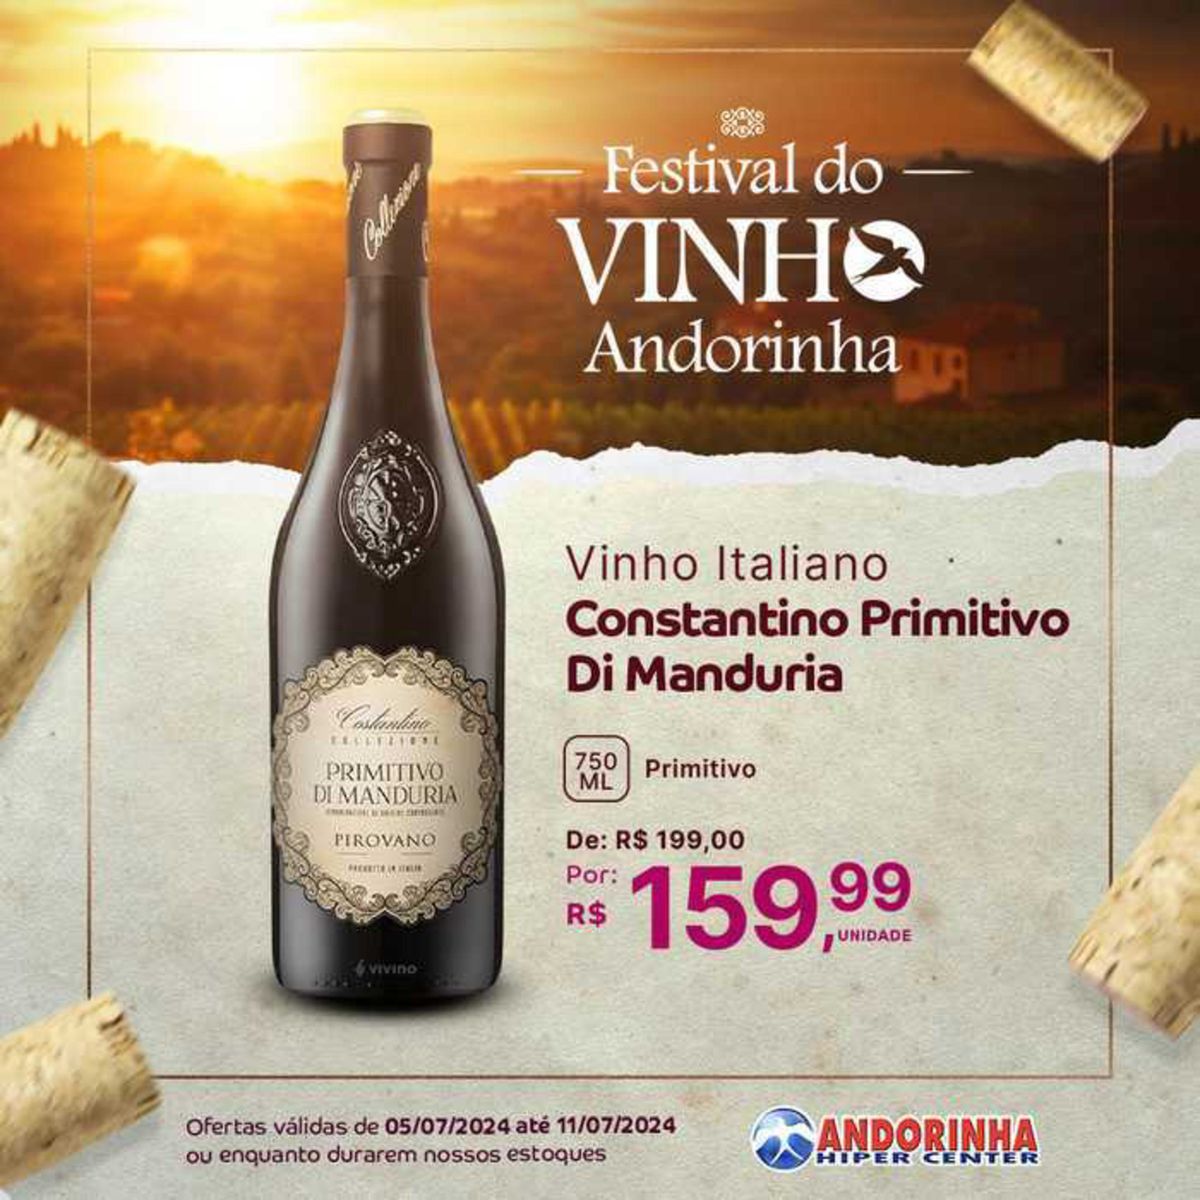 Vinho Italiano Constantino Primitivo Di Manduria em promoção no Andorinha Hipermercado